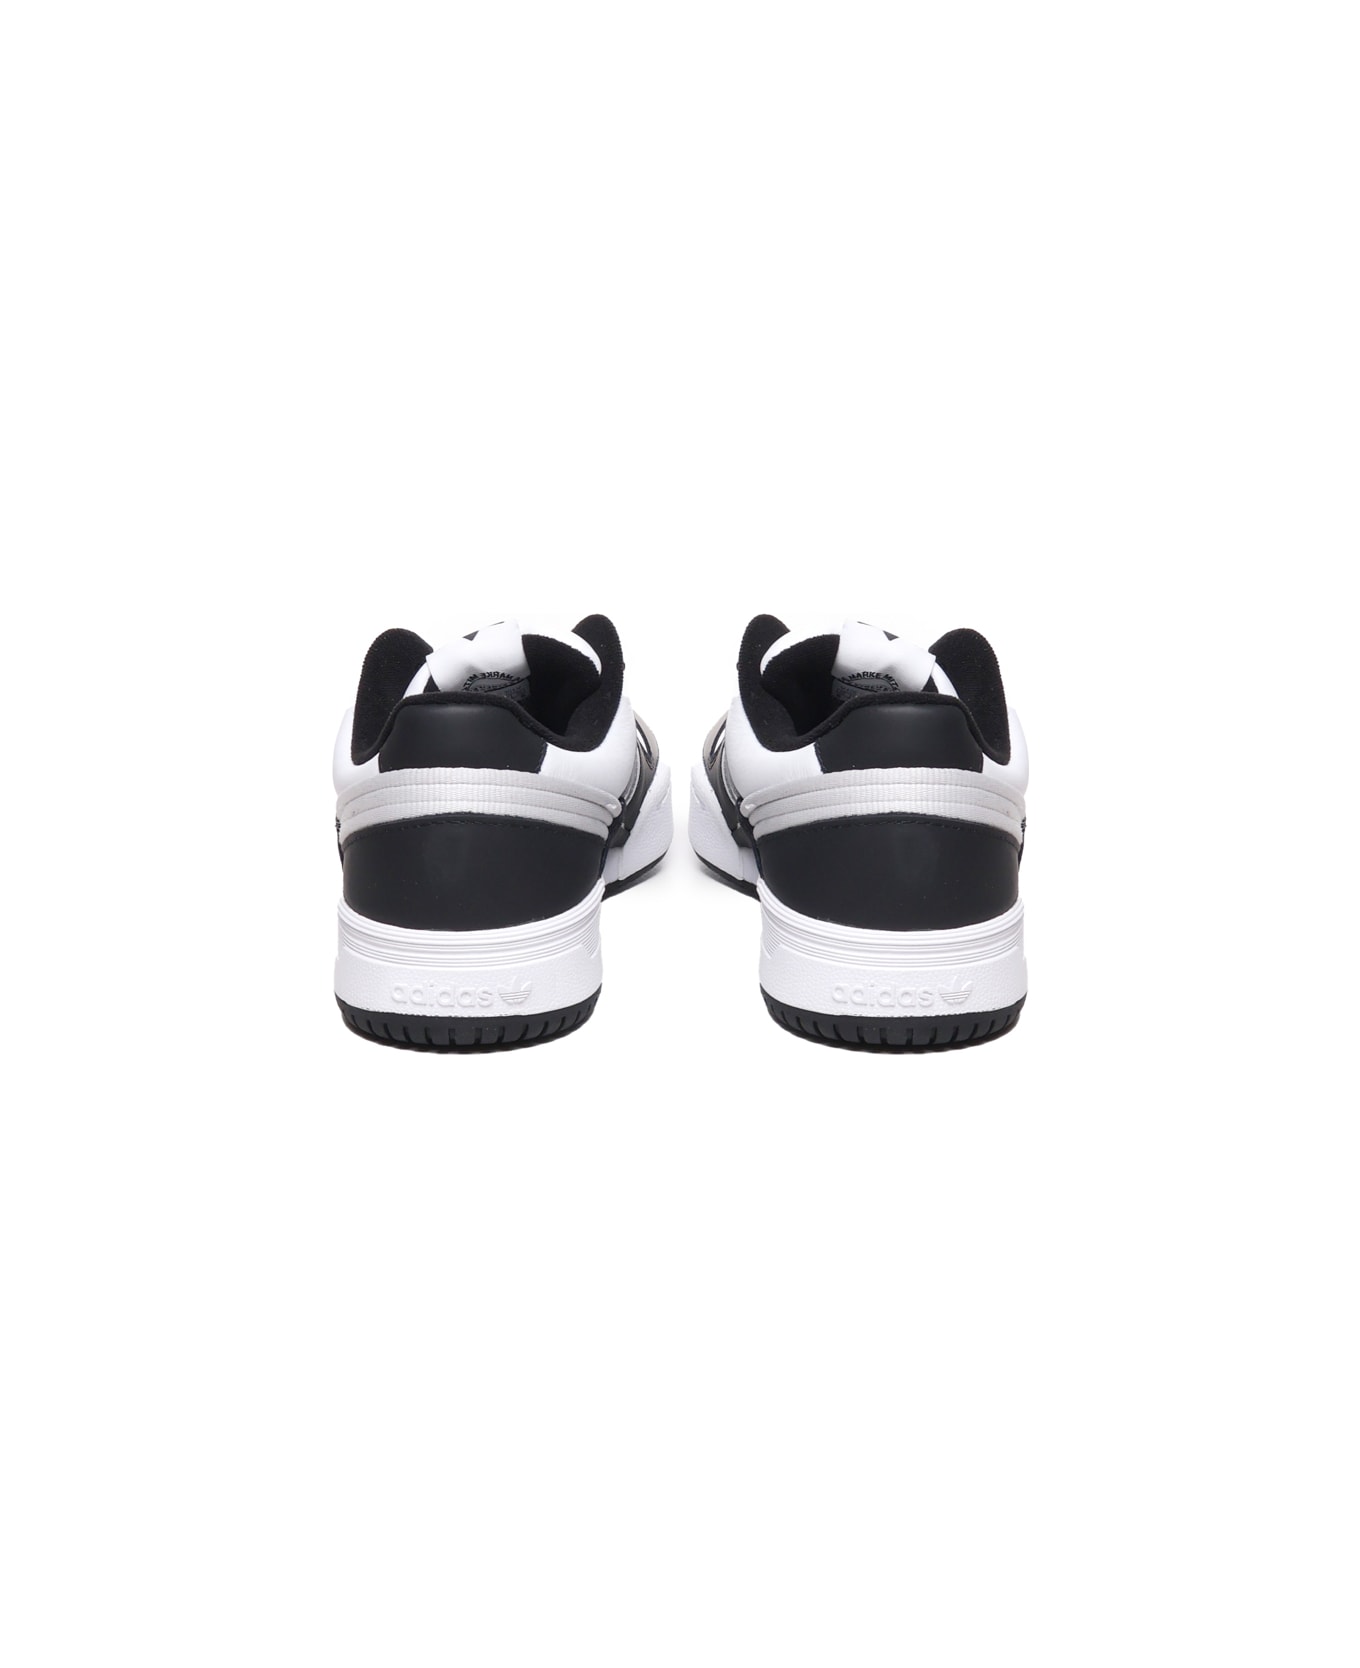 Adidas Originals Team Court 2 Sneakers - Black スニーカー